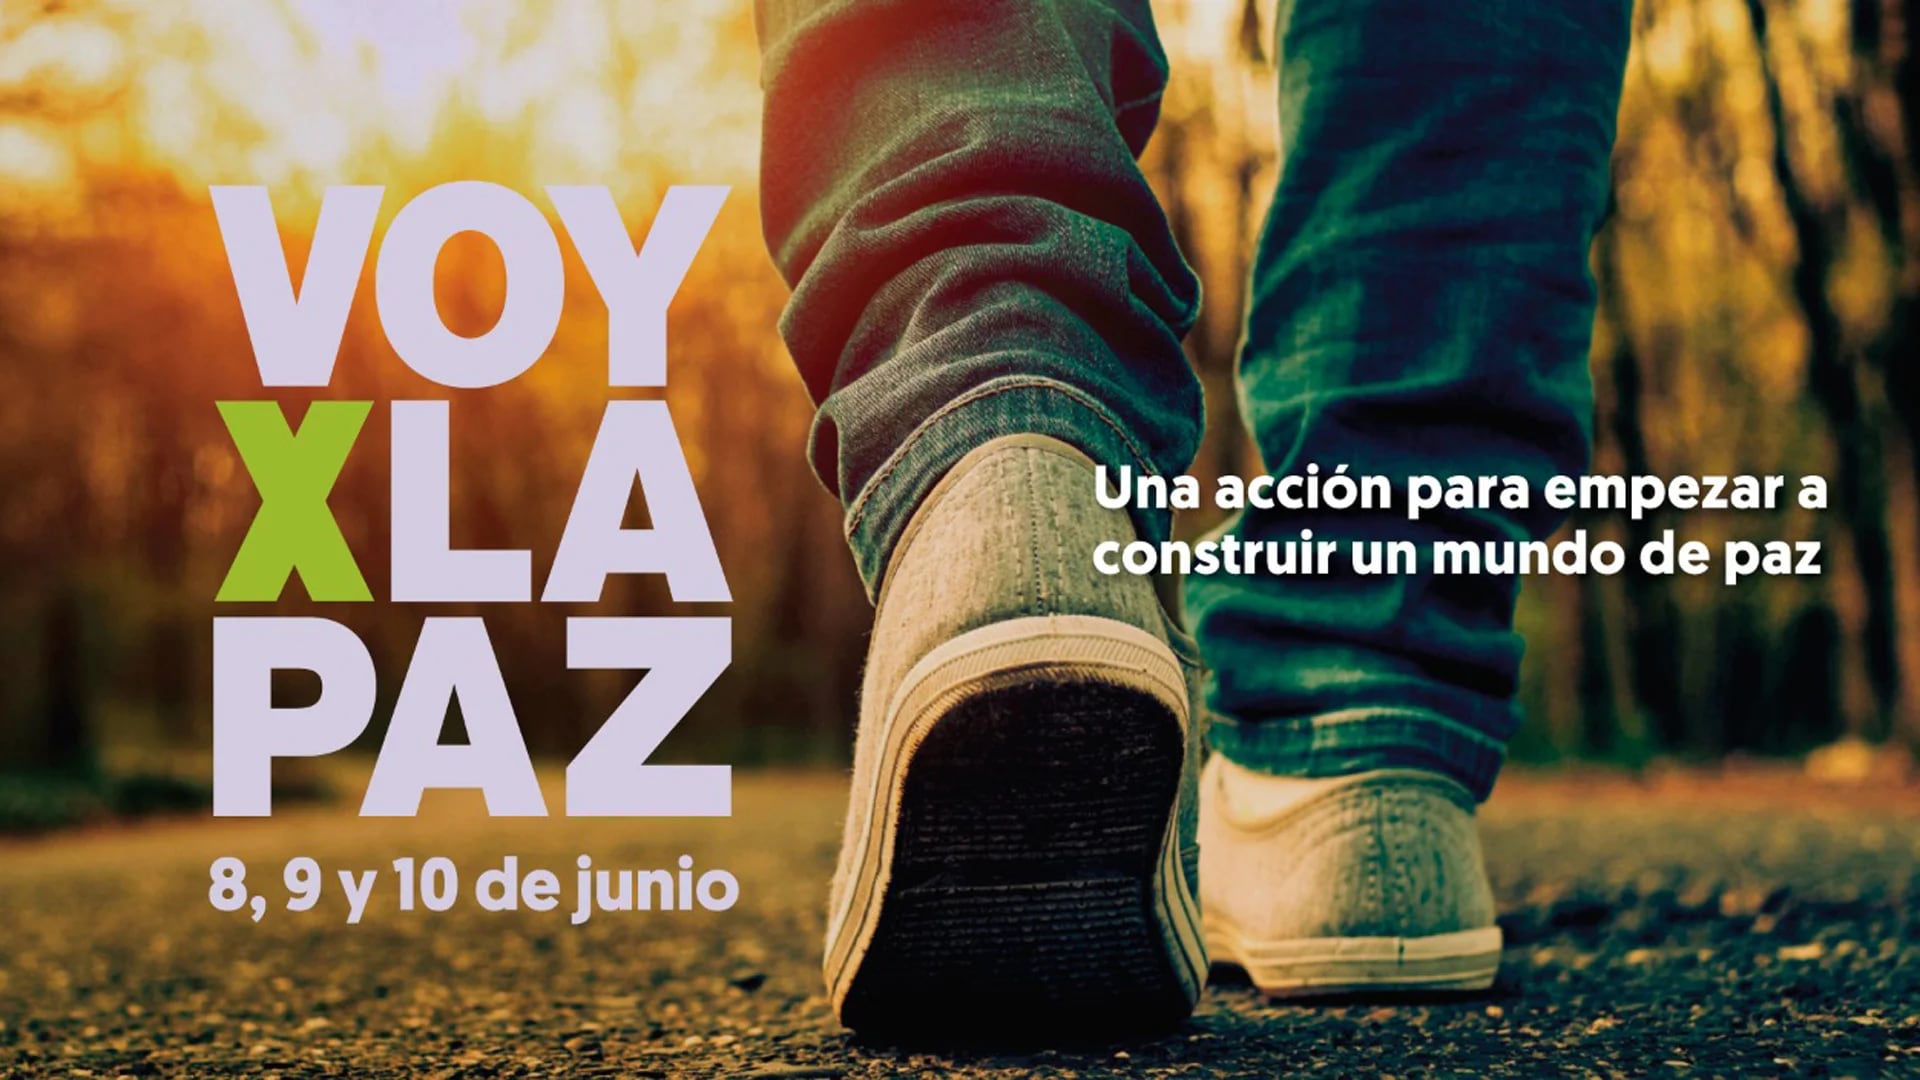 La acción social #VoyXLaPaz se celebrará en Rosario durante tres días consecutivos